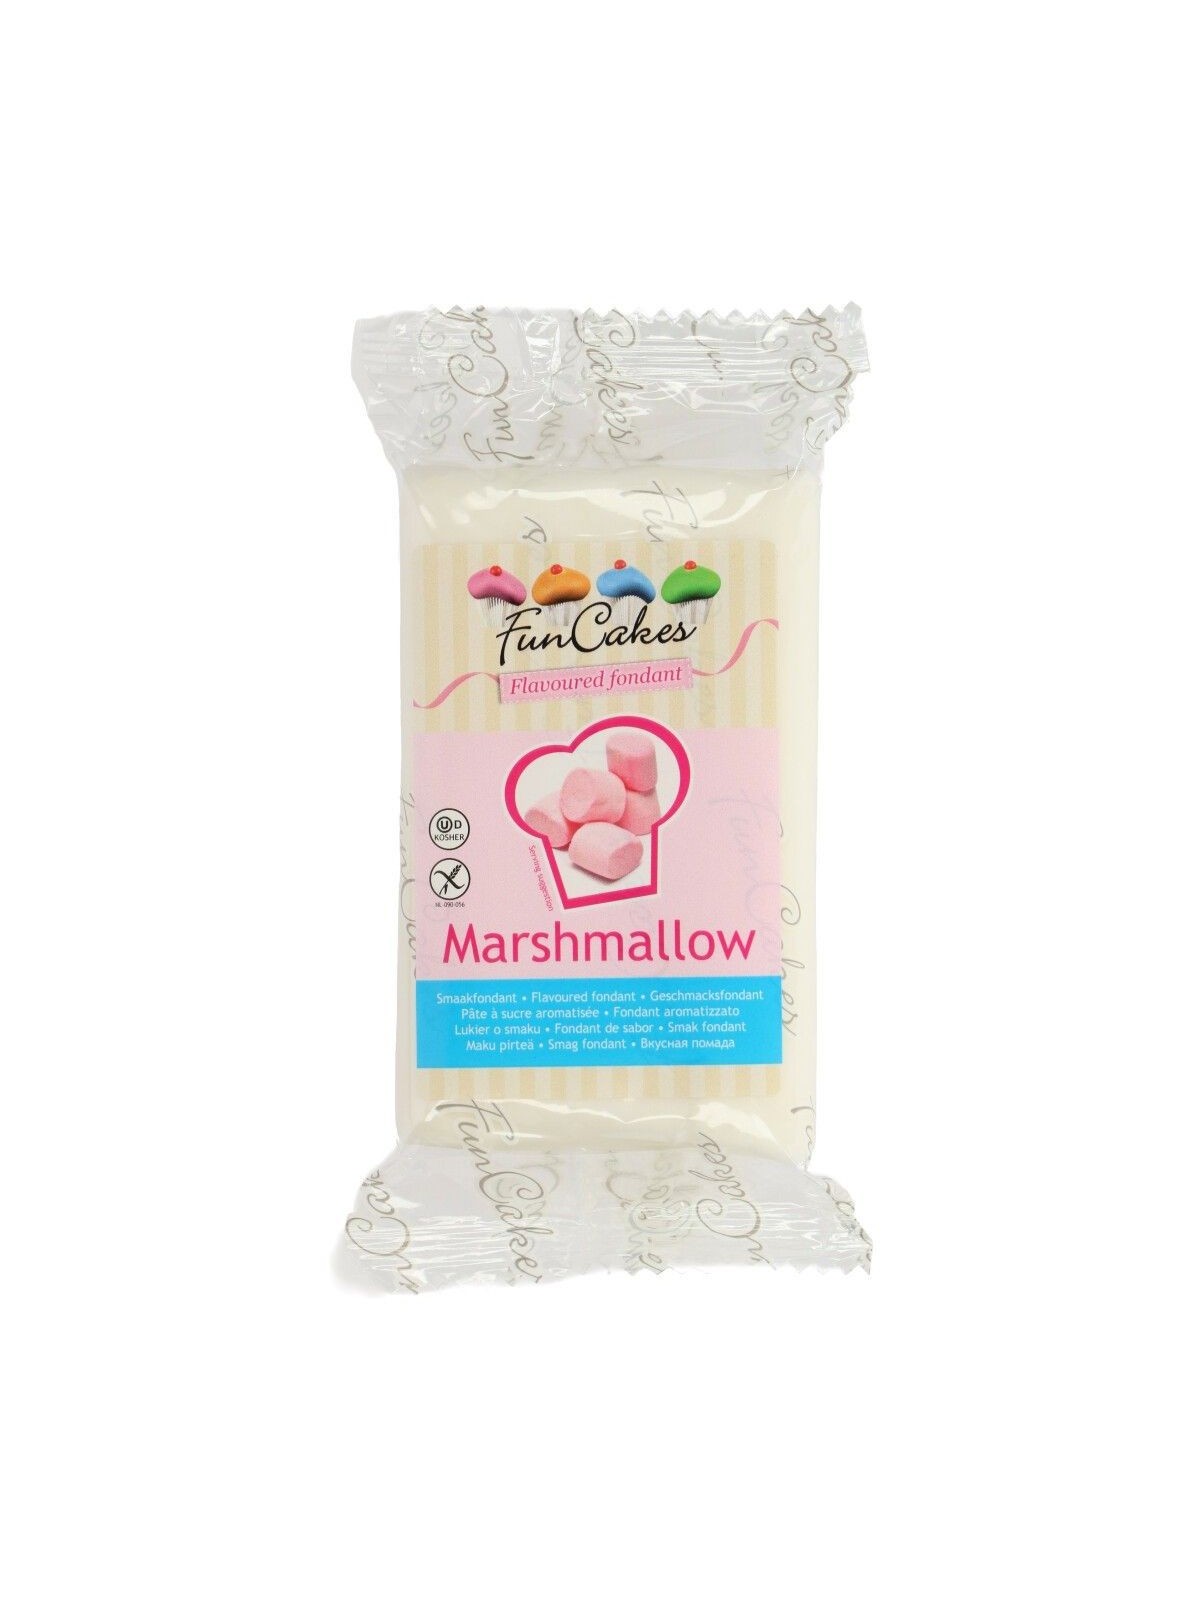 FunCakes potahový fondán Marshmallow - bílý 250g